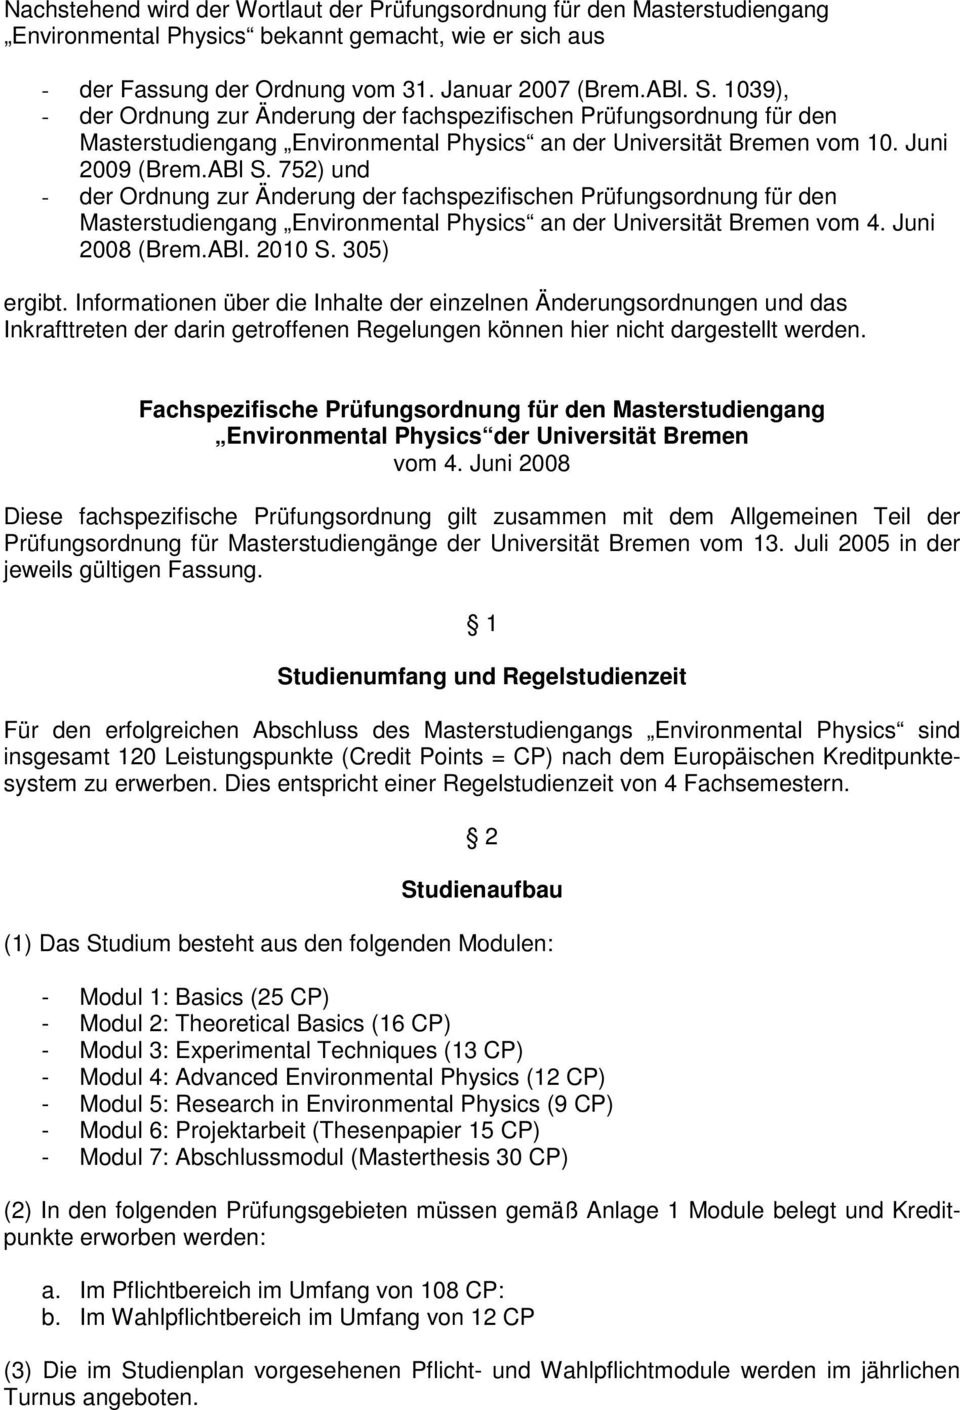 752) und - der Ordnung zur Änderung der fachspezifischen Prüfungsordnung für den Masterstudiengang Environmental Physics an der Universität Bremen vom 4. Juni 2008 (Brem.ABl. 2010 S. 305) ergibt.